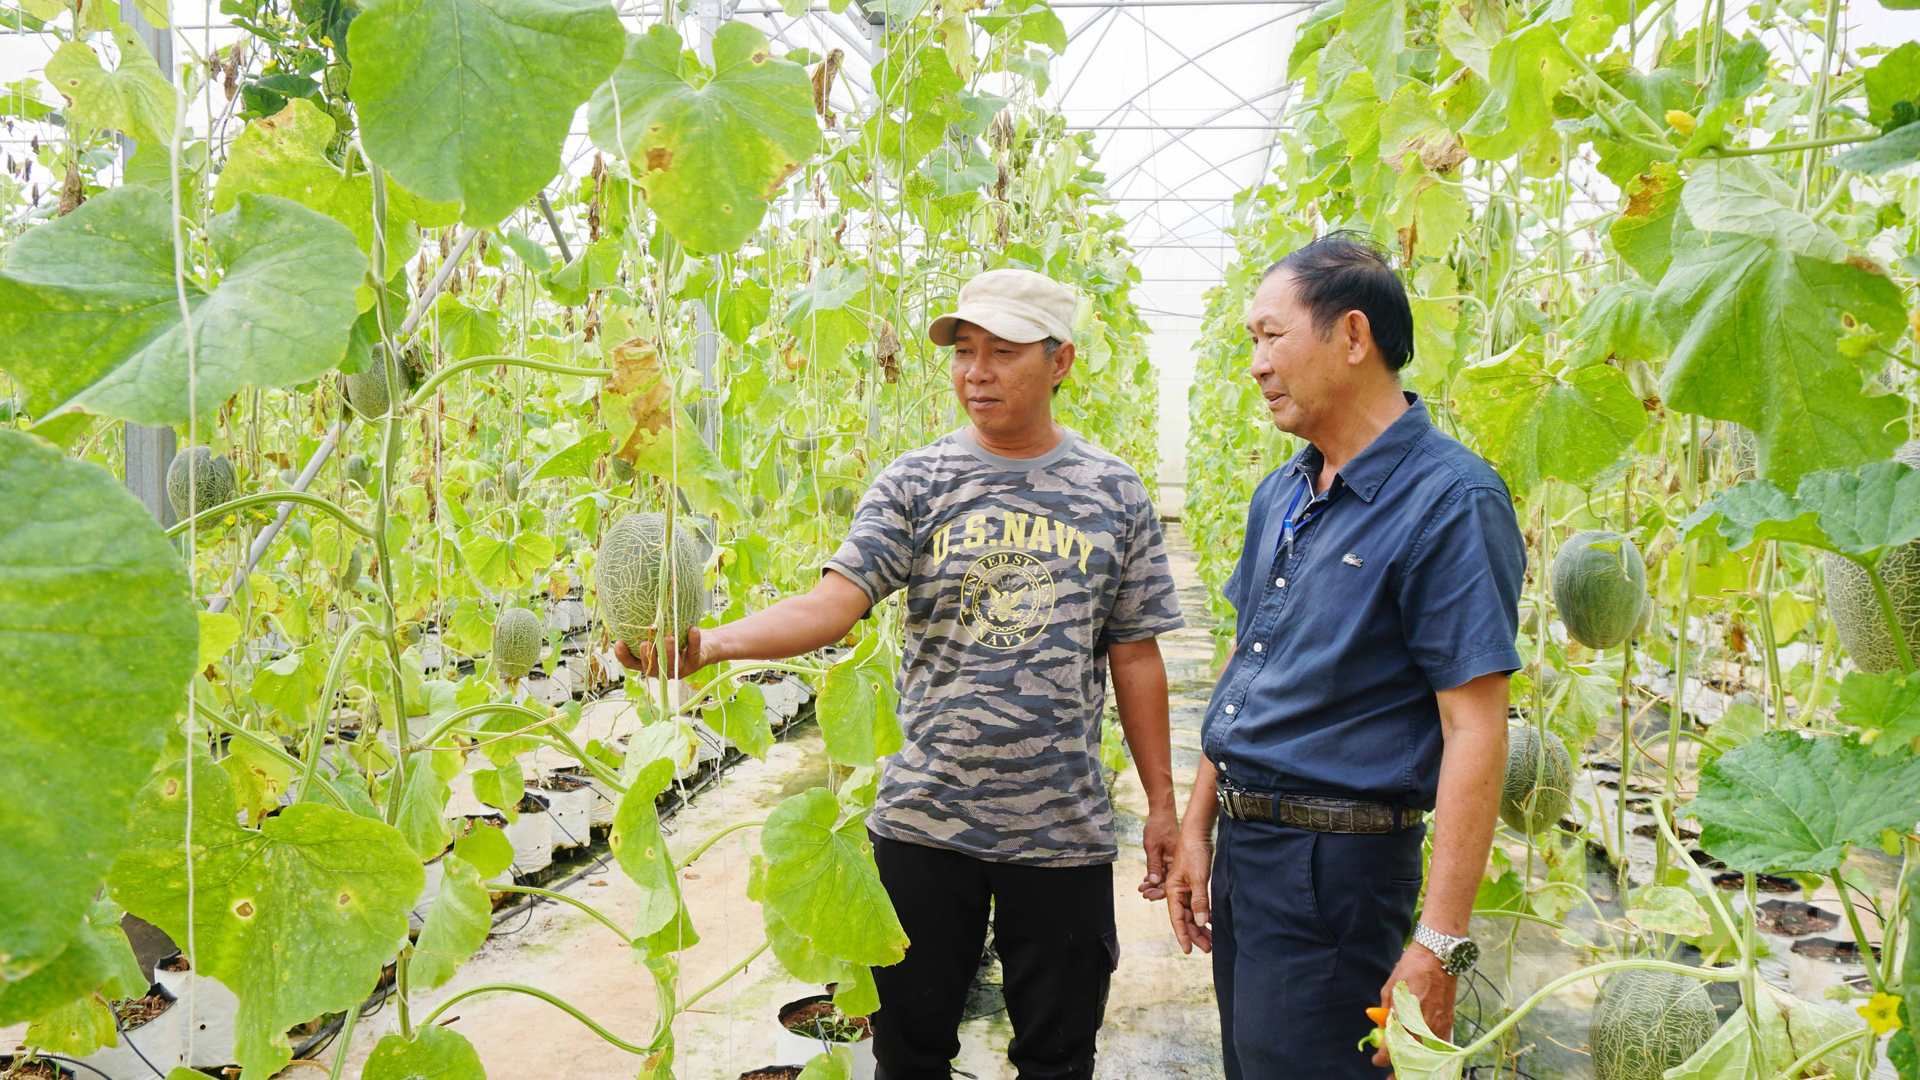 Trong nhiệm kỳ mới, Hội Nông dân Đồng Nai sẽ định hướng cho hội viên phát triển theo mô hình nông nghiệp công nghệ cao, theo chuỗi bền vững. Ảnh: Lê Bình.